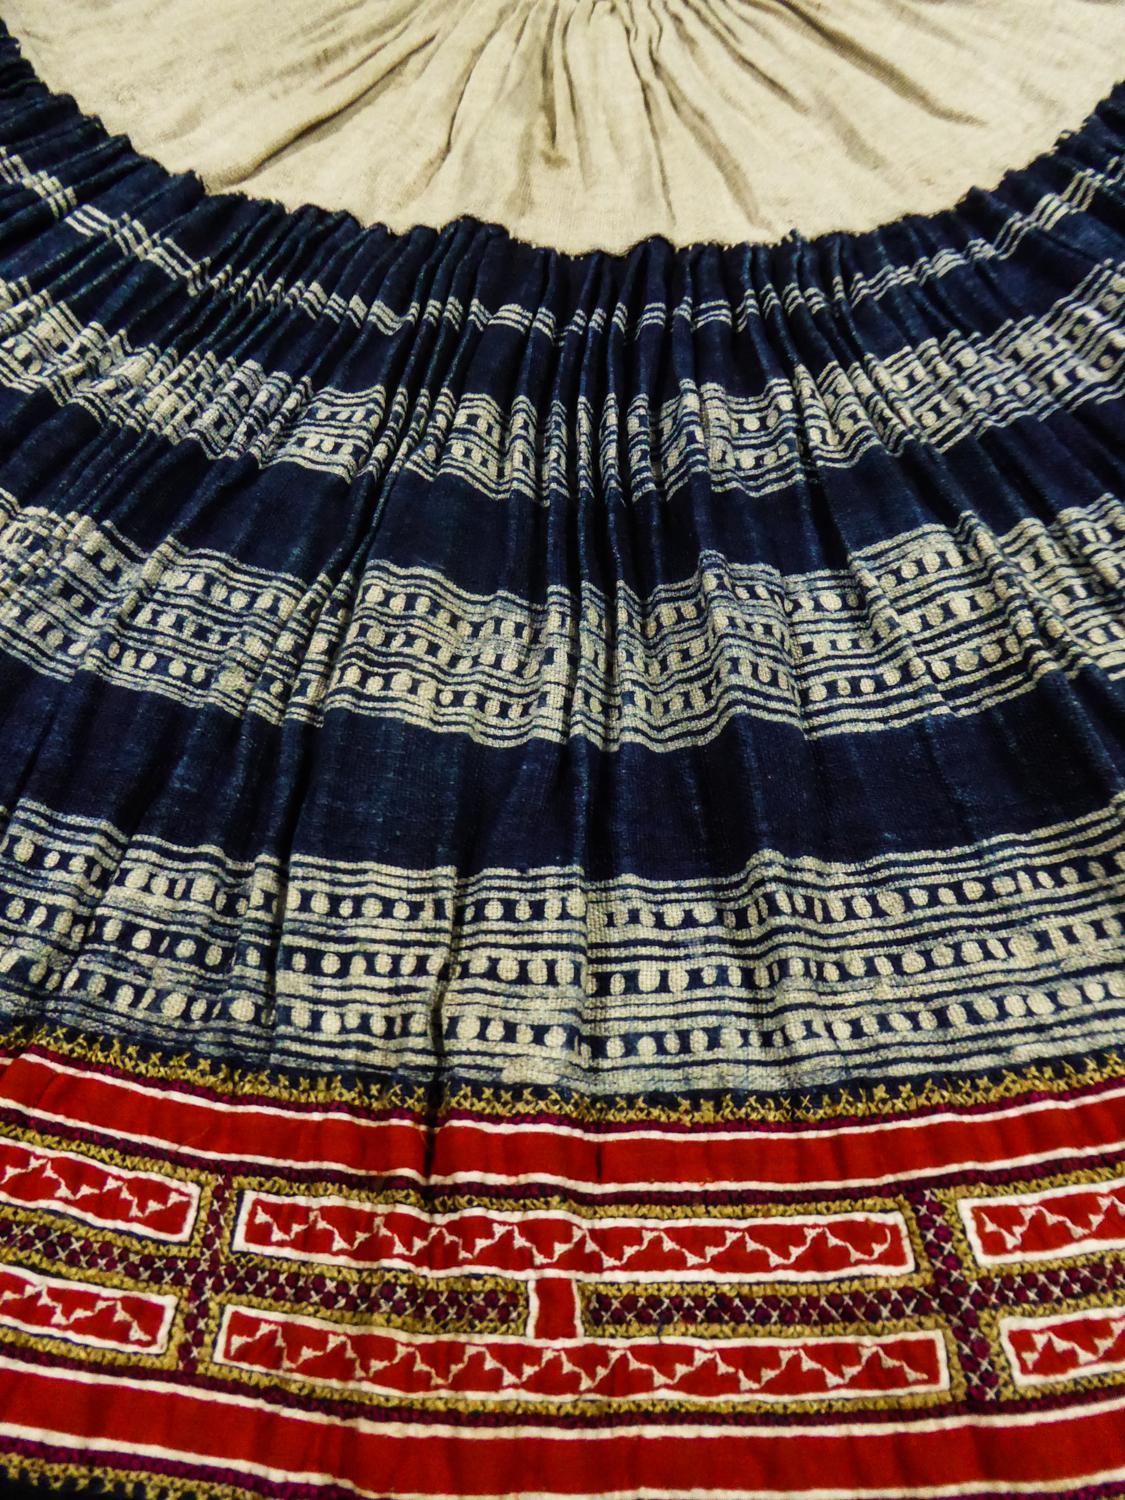 hmong skirts for sale